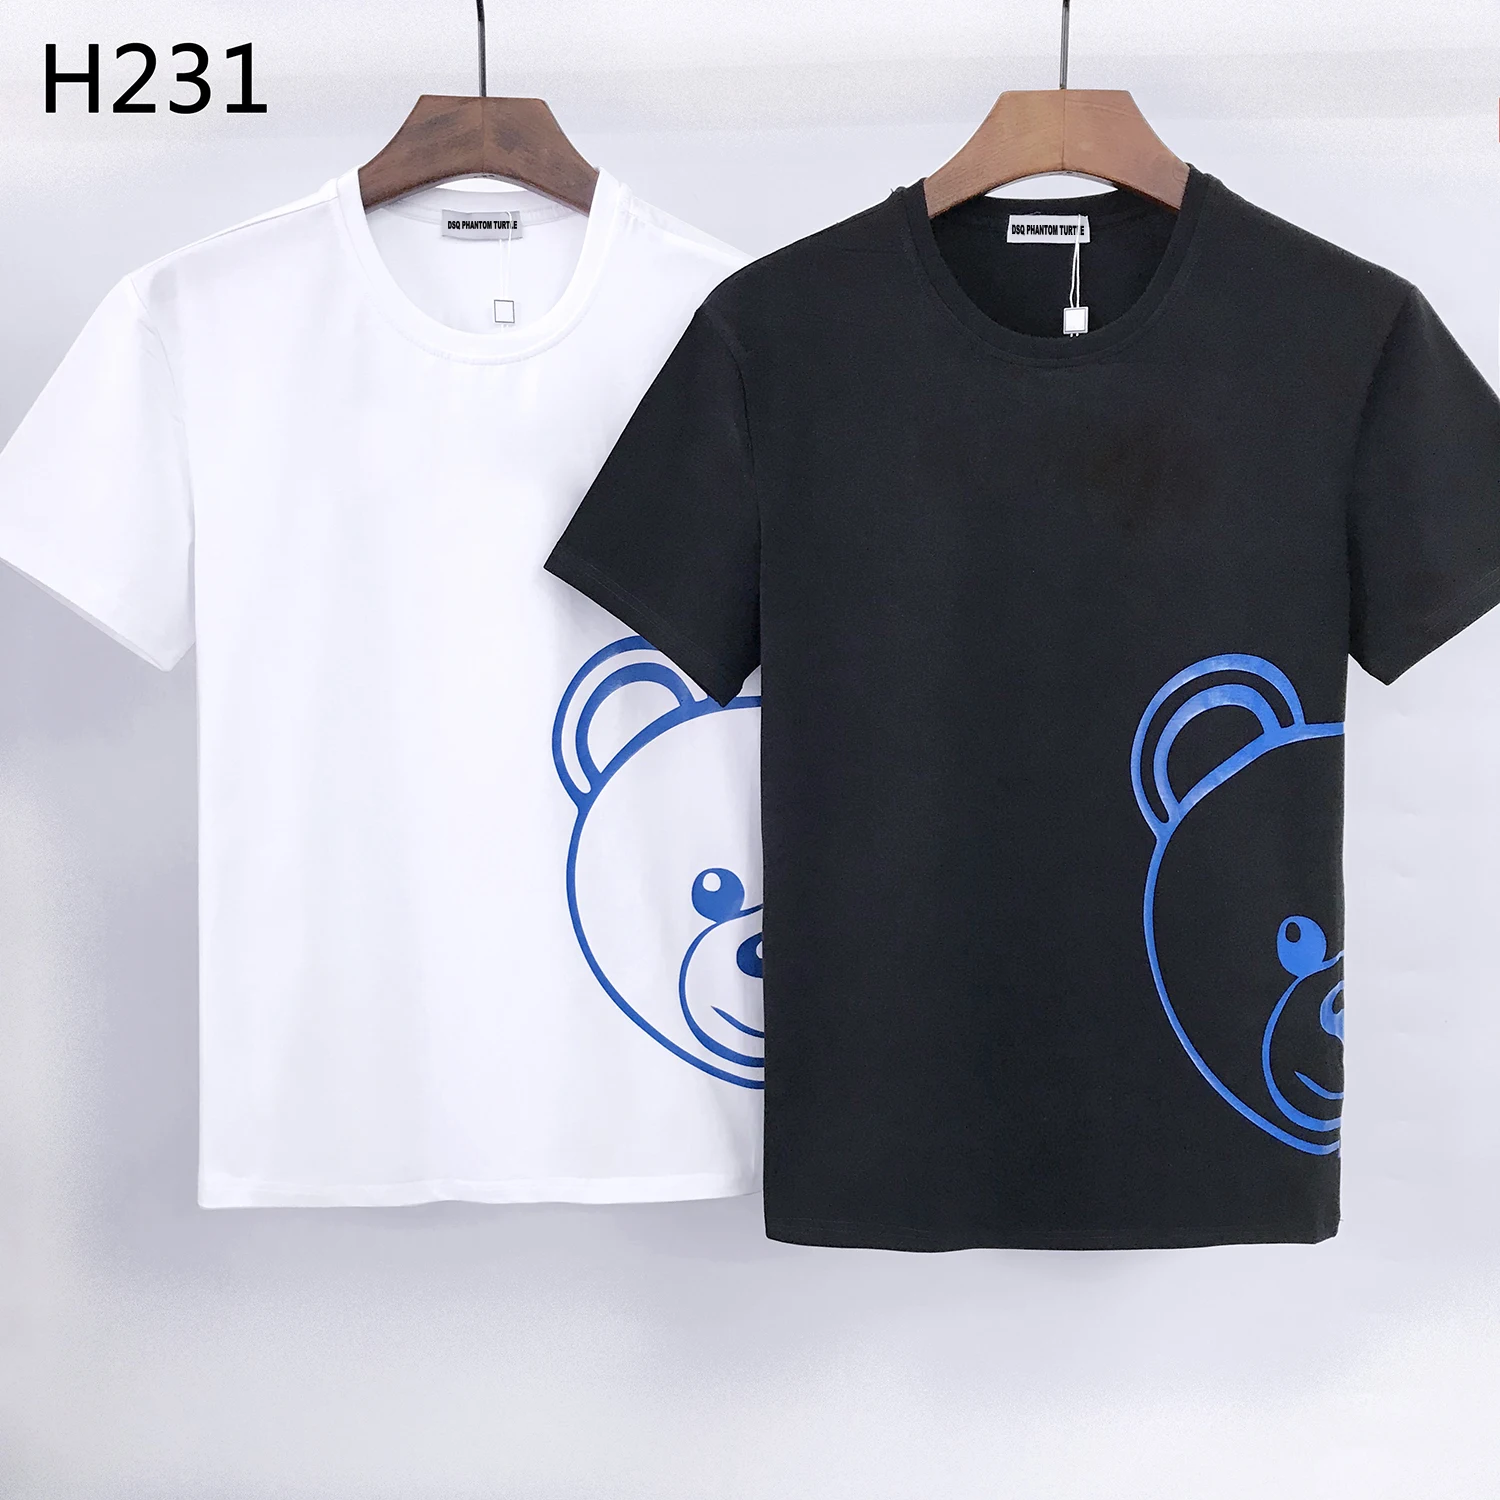 

DSQ PHANTOM TURTLE 2021 Summer New T-shirt Men Fashion Print 100% Cotton T Shirts Breathable Quality Tees H231